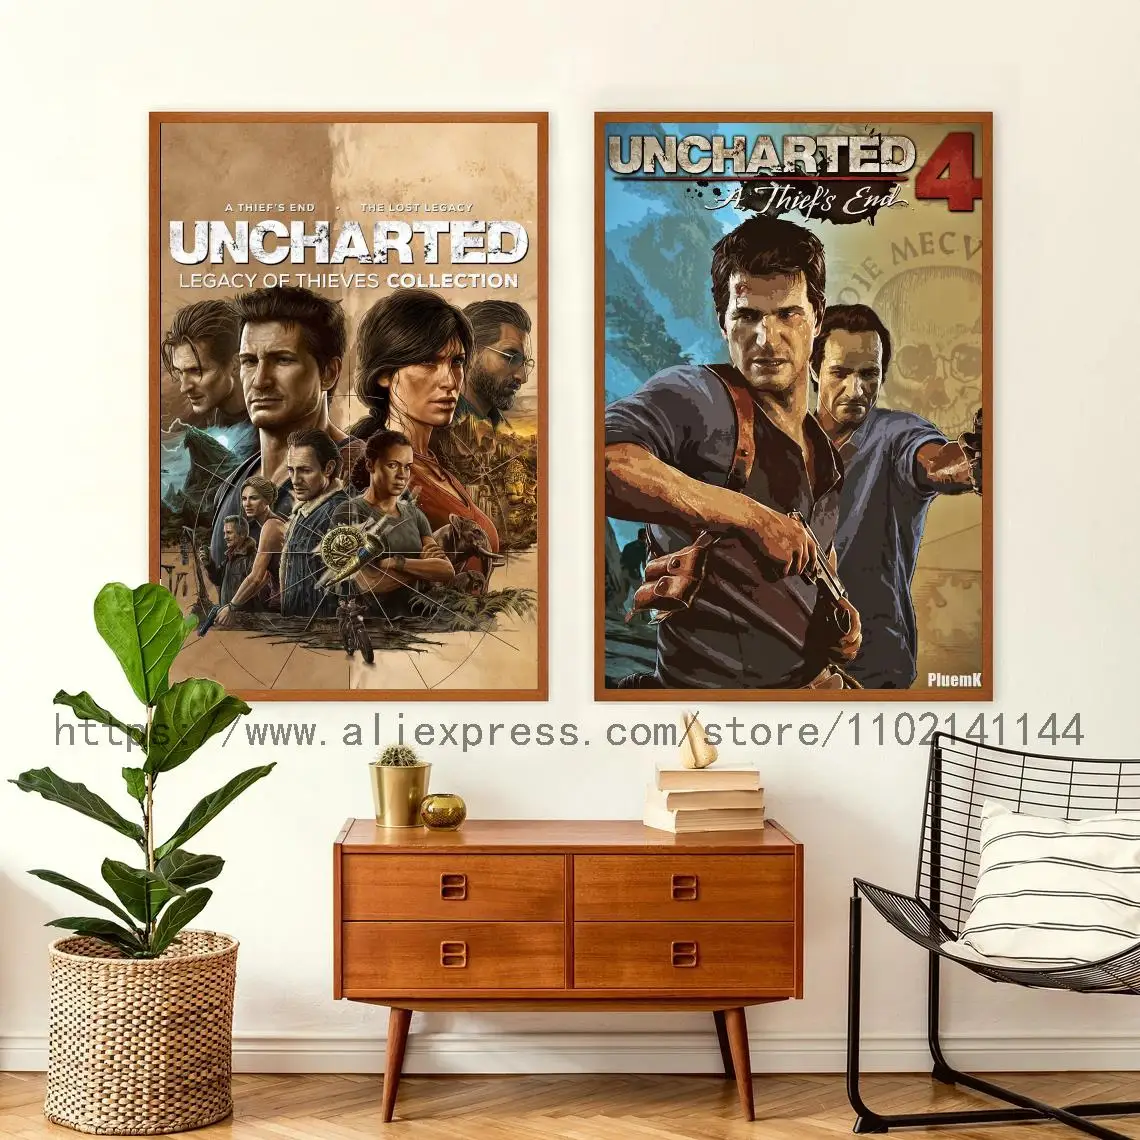 Uncharted 4: A Thief's End já vendeu mais de 10 milhões de cópias